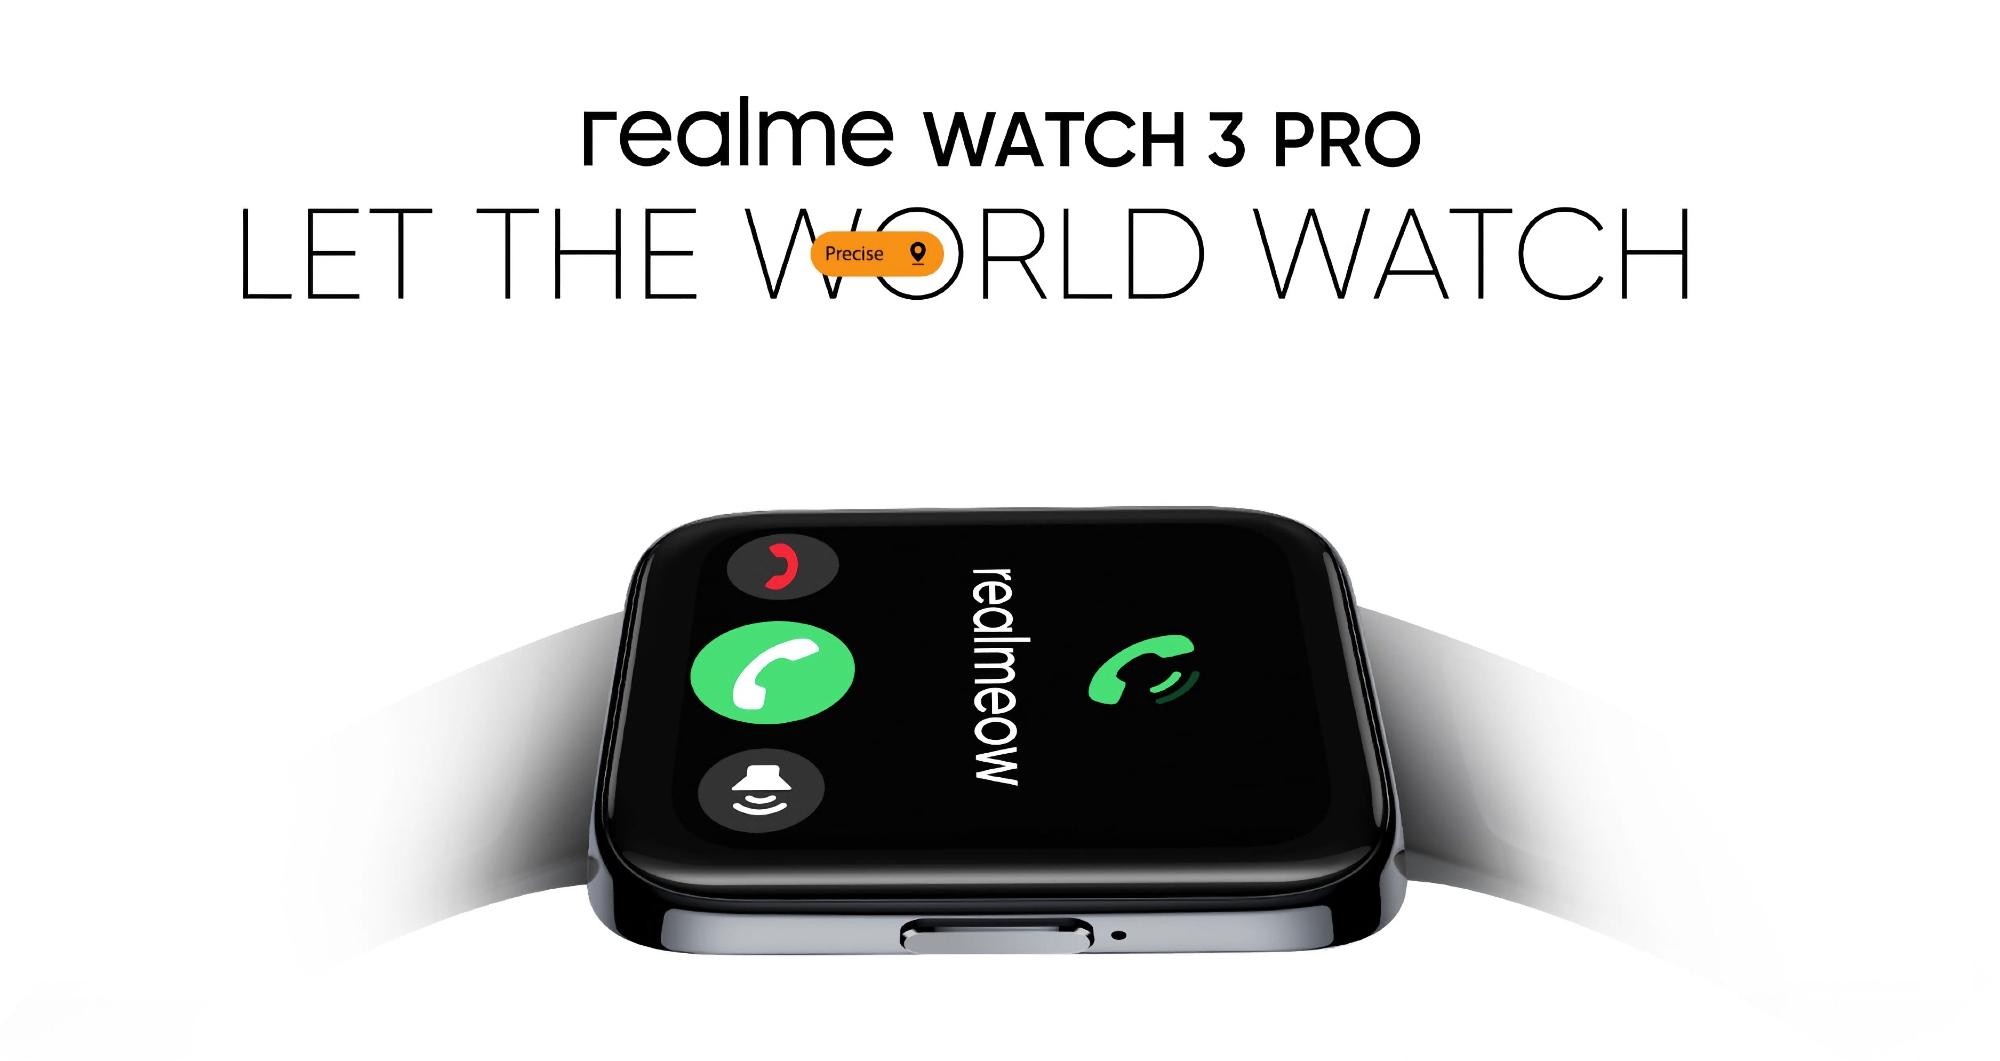 C'est officiel : la realme Watch 3 Pro, une smartwatch dotée d'un grand écran AMOLED, d'un GPS et d'une fonction d'appel, sera dévoilée le 6 septembre.